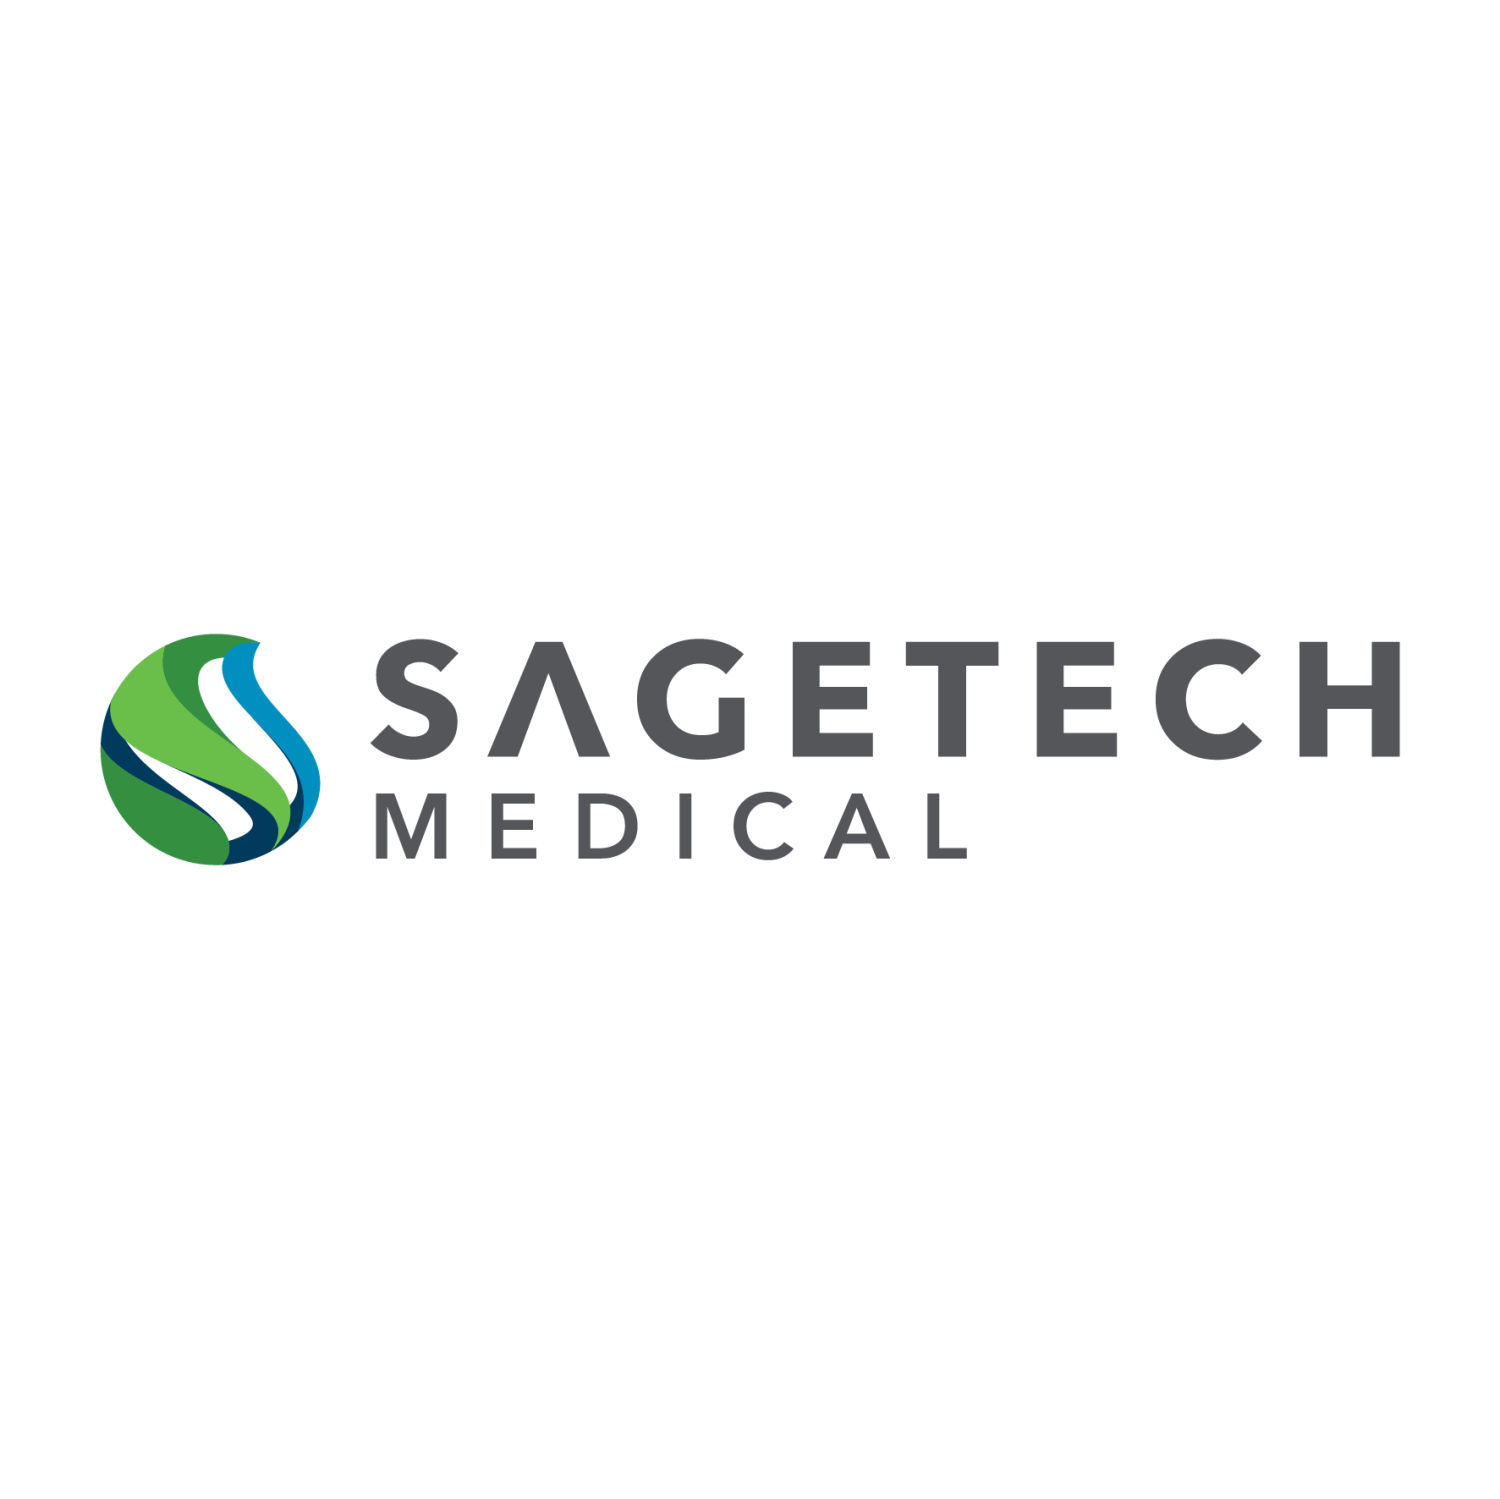 SageTech Medical Equipment Ltd.